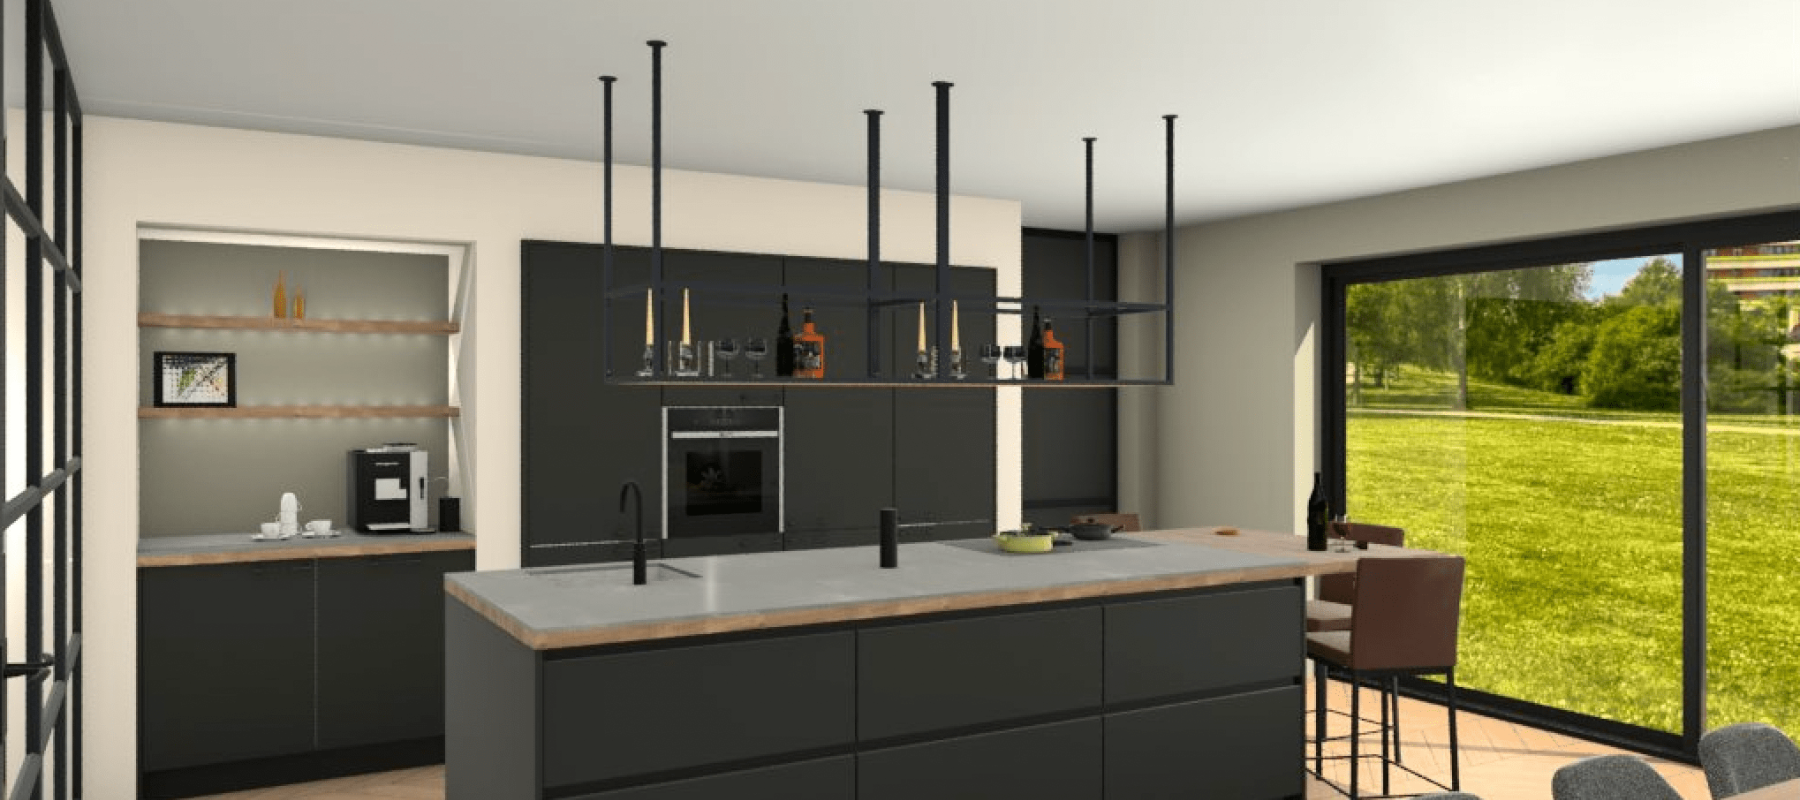 Uw nieuwe keuken in 3D? Laat u inspireren door onze voorbeelden